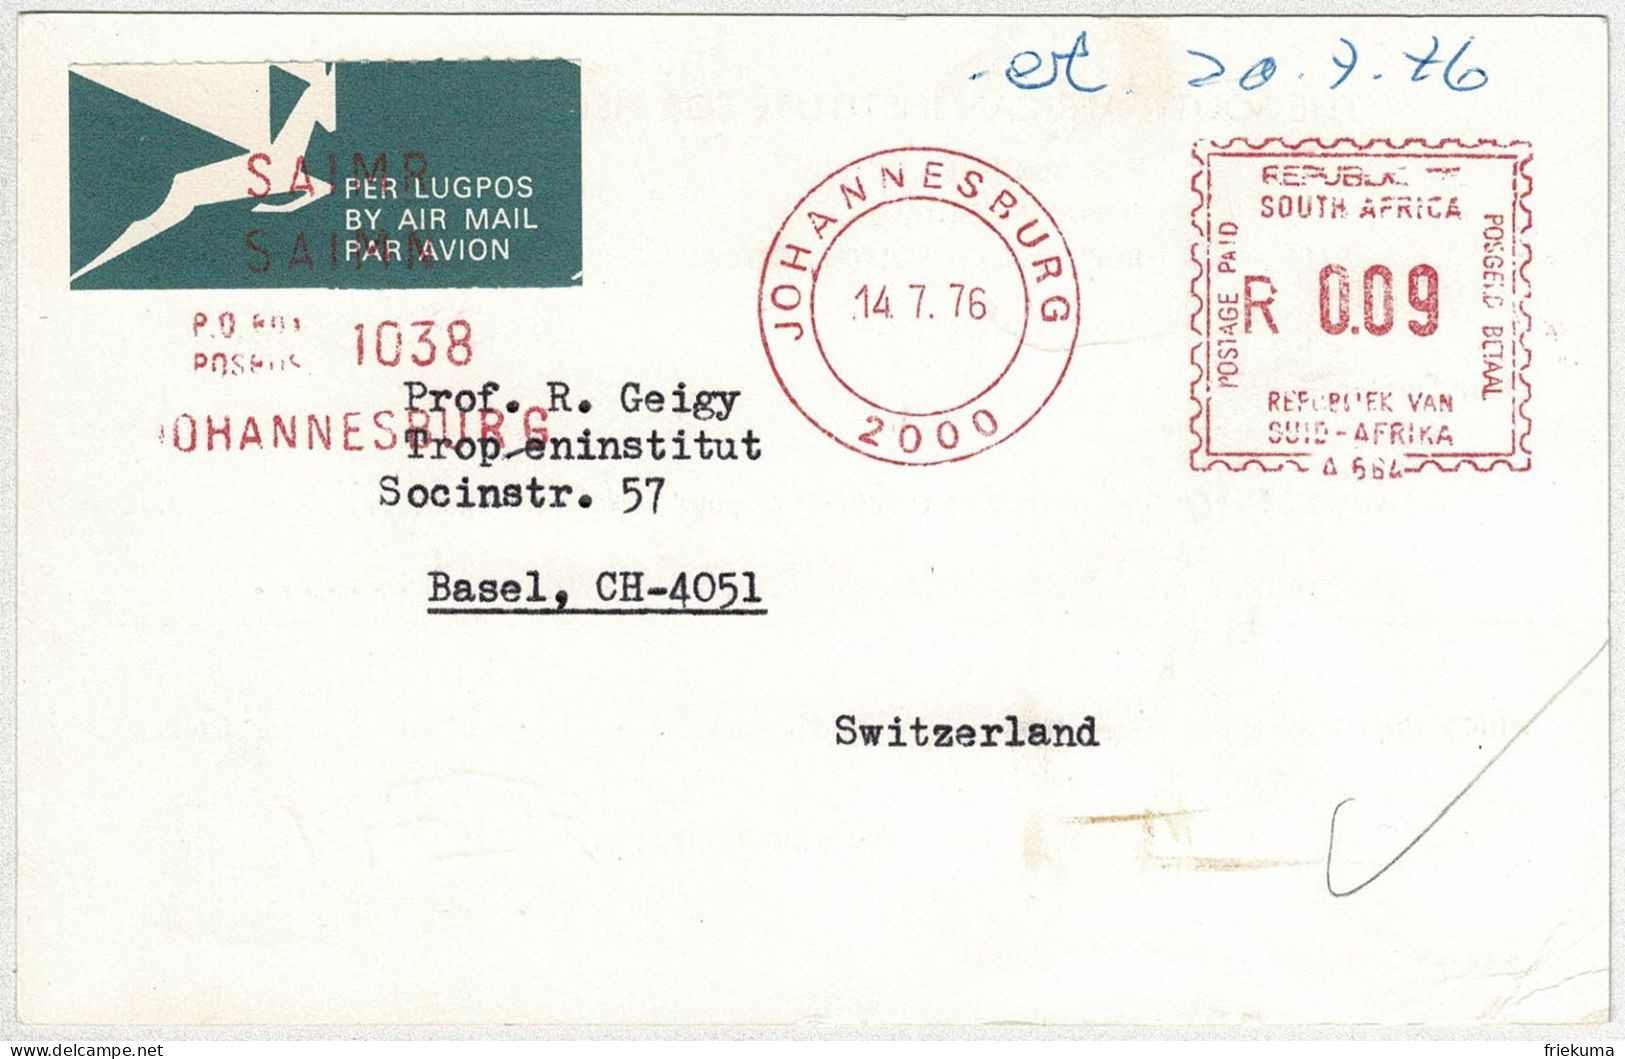 Südafrika / South Africa 1976, Postkarte Luftpost / Air Mail Freistempel / Meterstamp Johannesburg - Basel (Schweiz)  - Briefe U. Dokumente